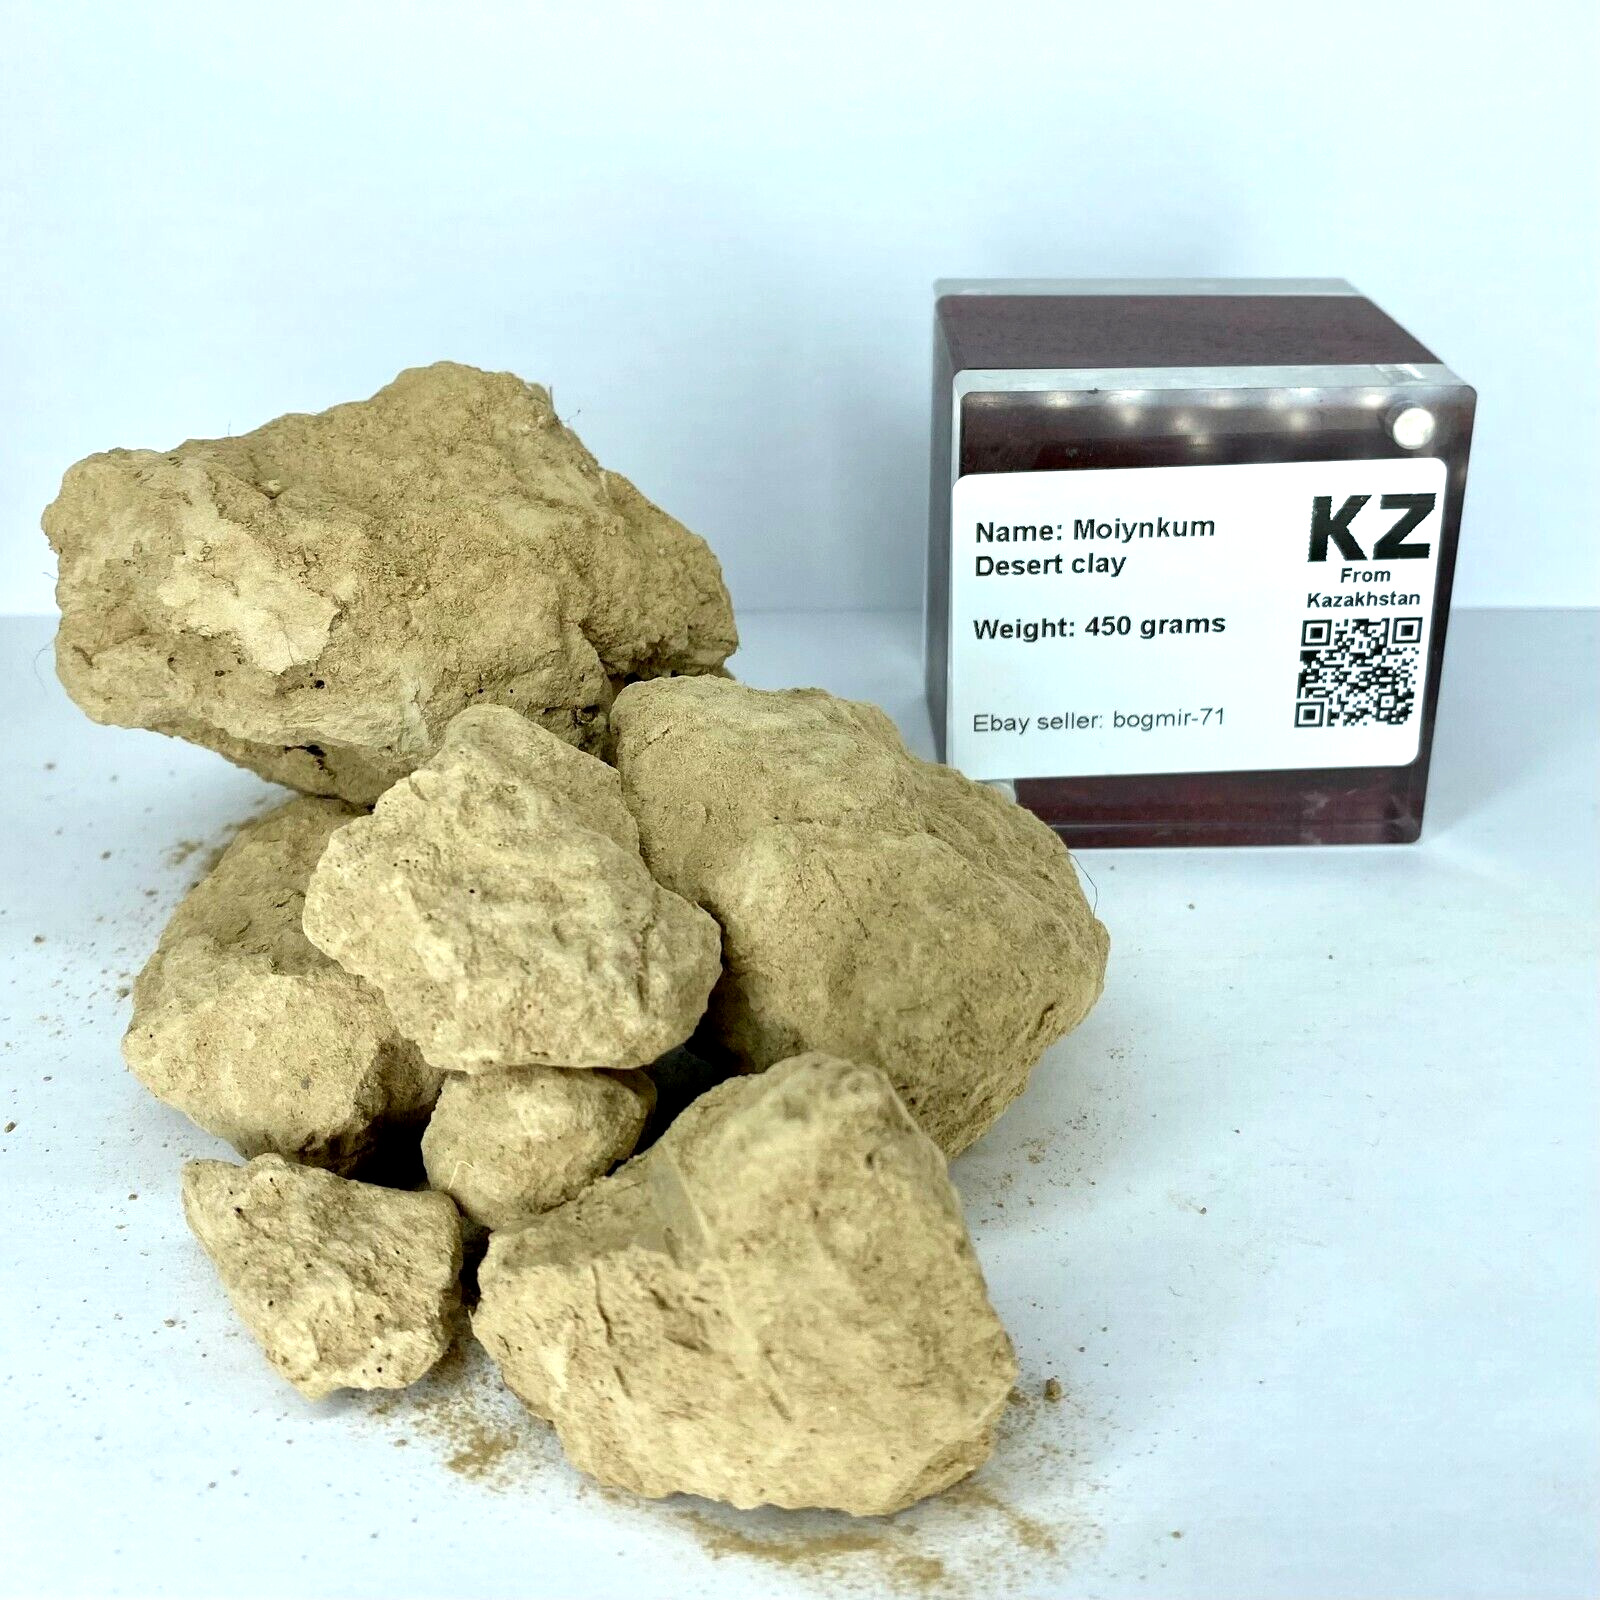 Clay (Soil) of Moiynkum Desert, Kazakhstan 450g for collection